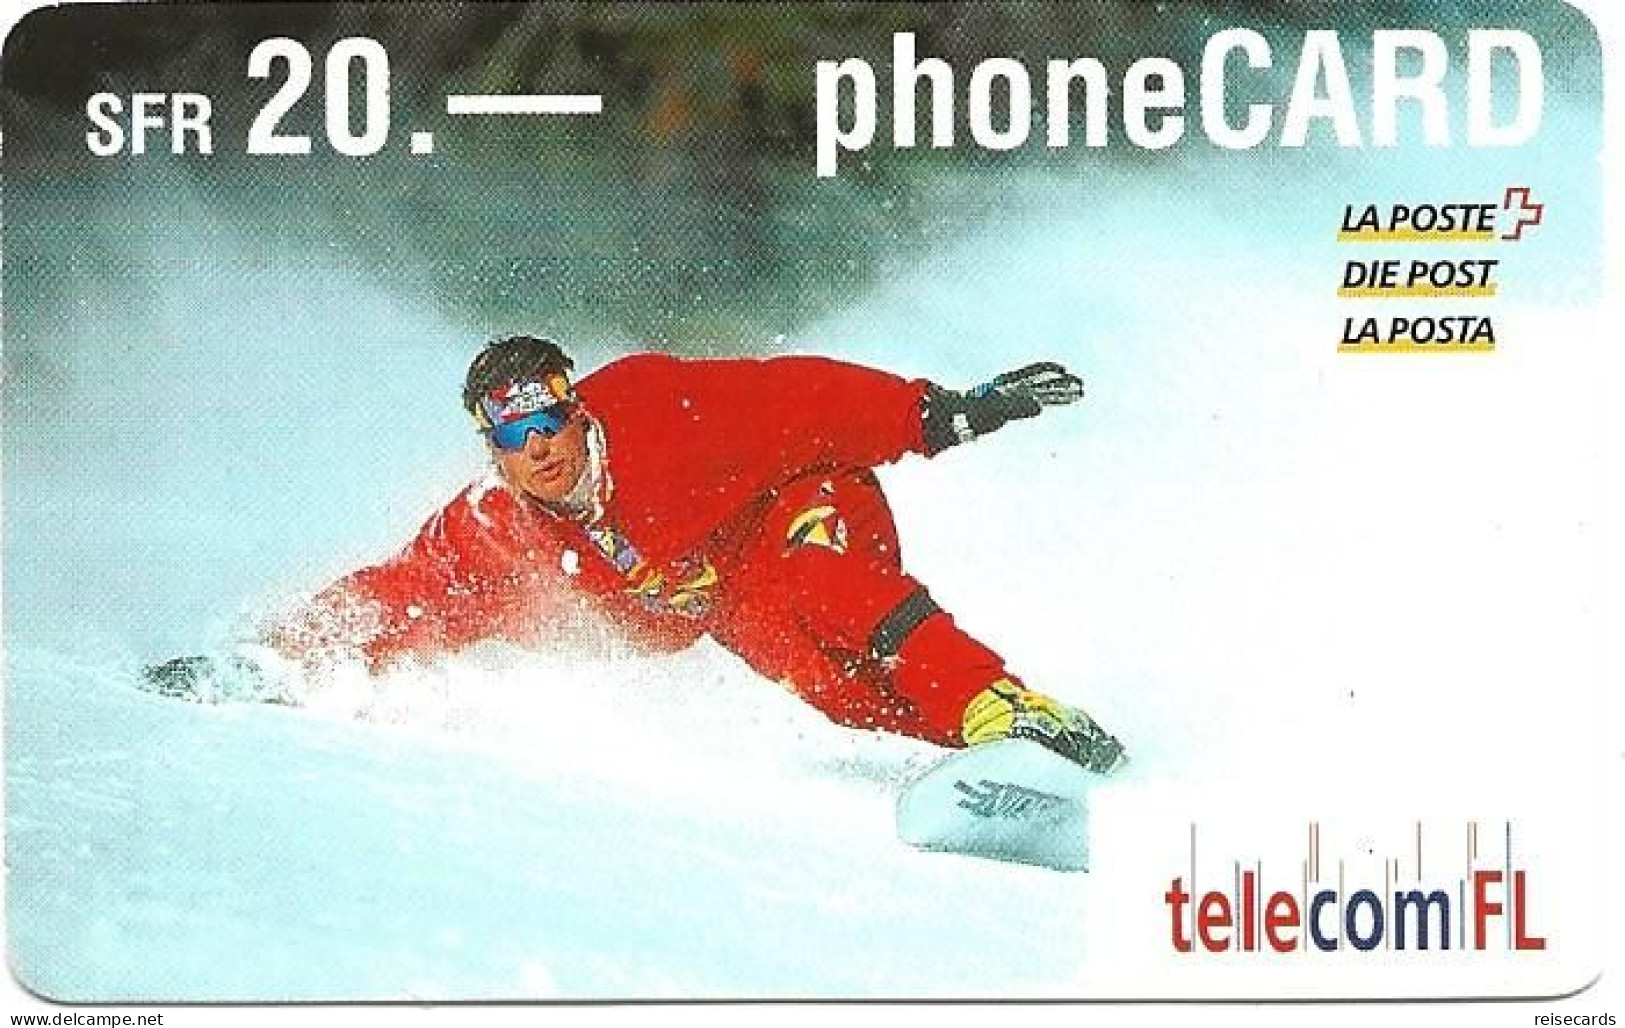 Liechtenstein: Telecom FL - Snowboarder - Liechtenstein